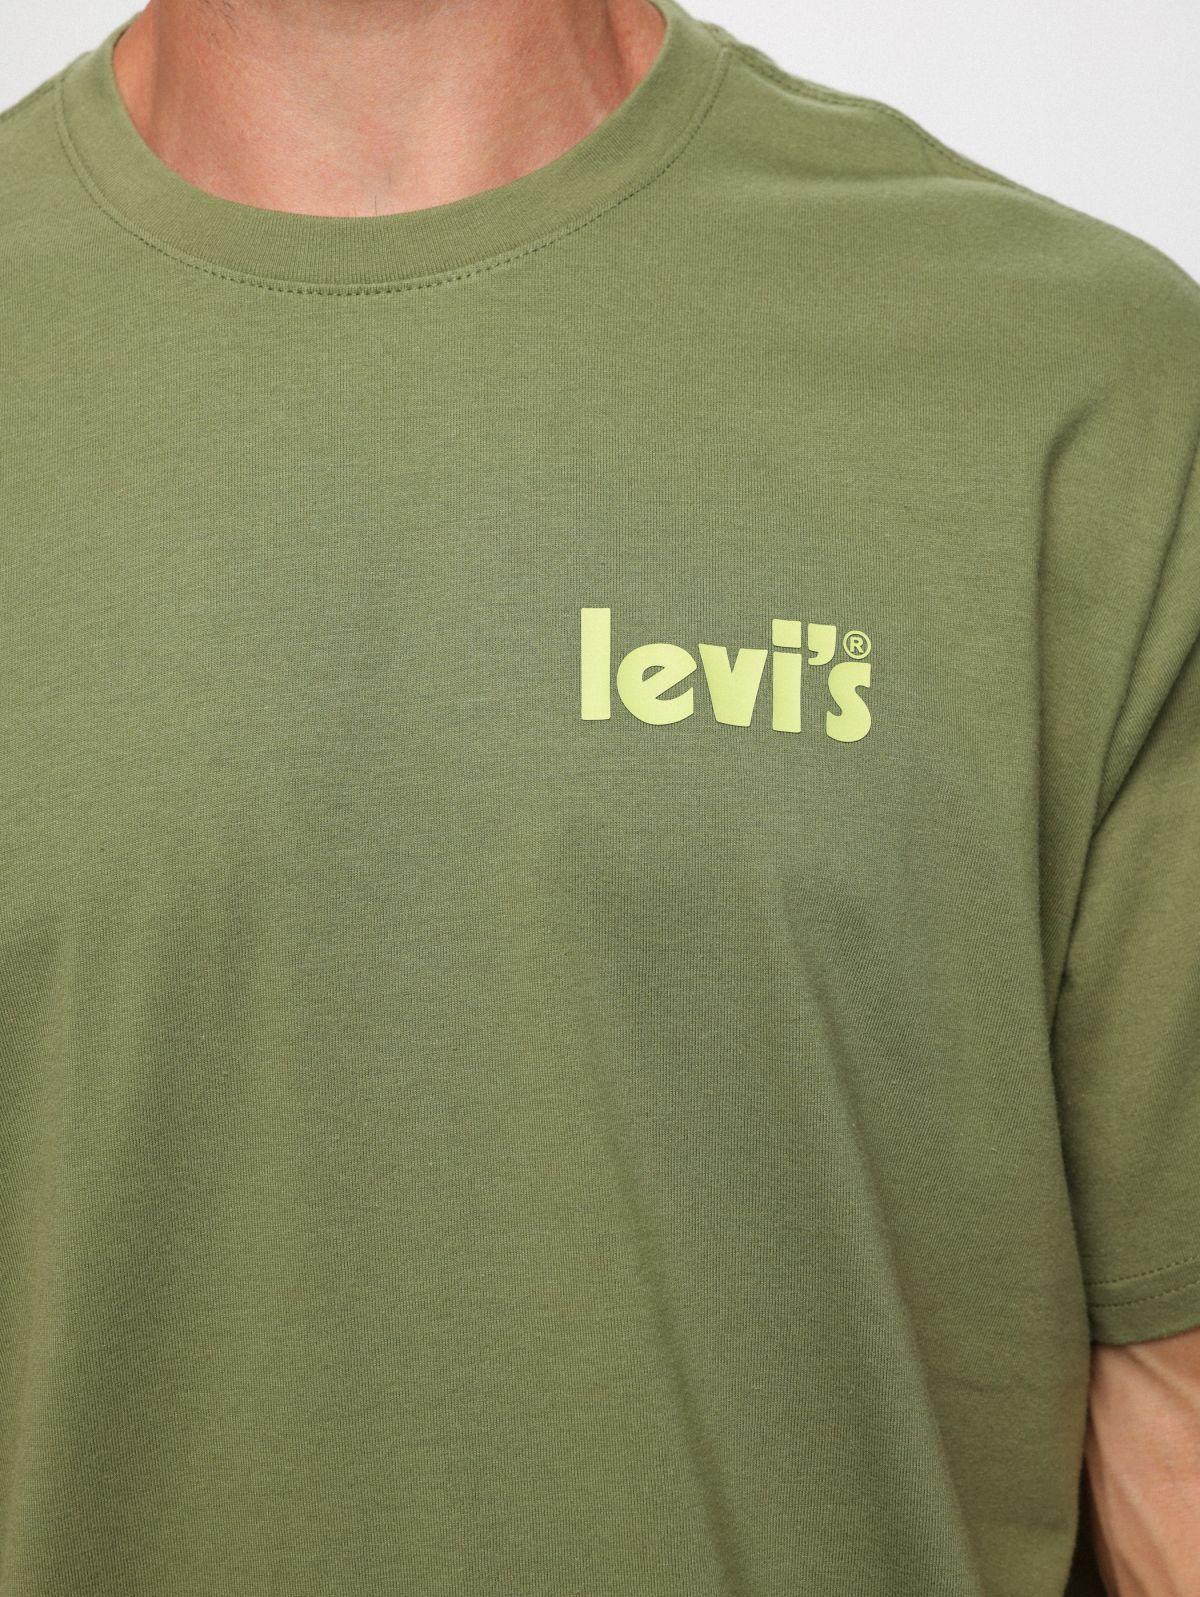  טי שירט עם הדפס לוגו של LEVIS